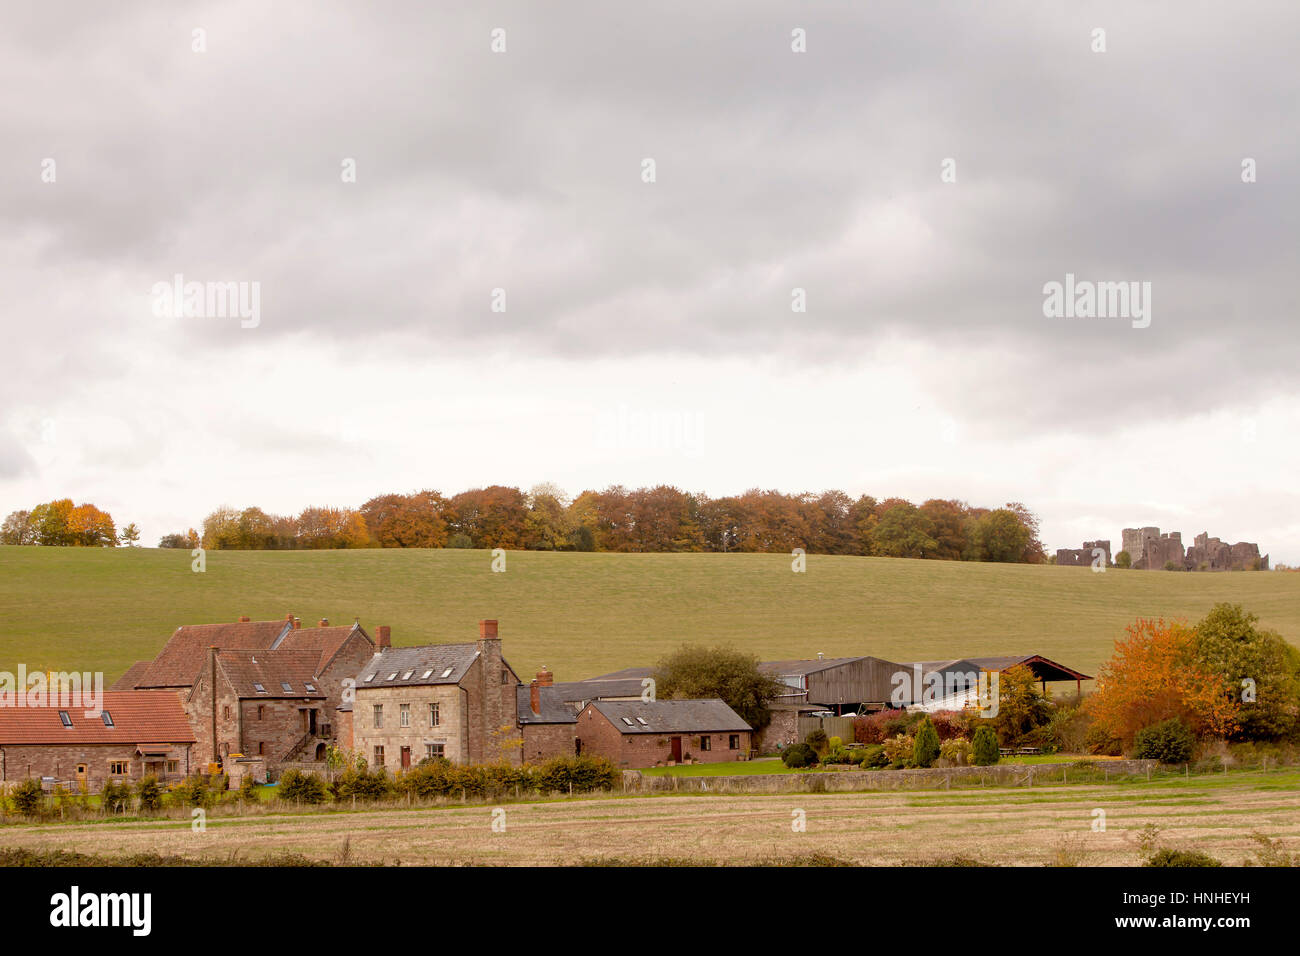 Casa de granja británica. Un pequeño asentamiento agrícola histórico que ha perdurado a lo largo de los siglos se anida en una curva del río Wye. En la cresta de la Foto de stock